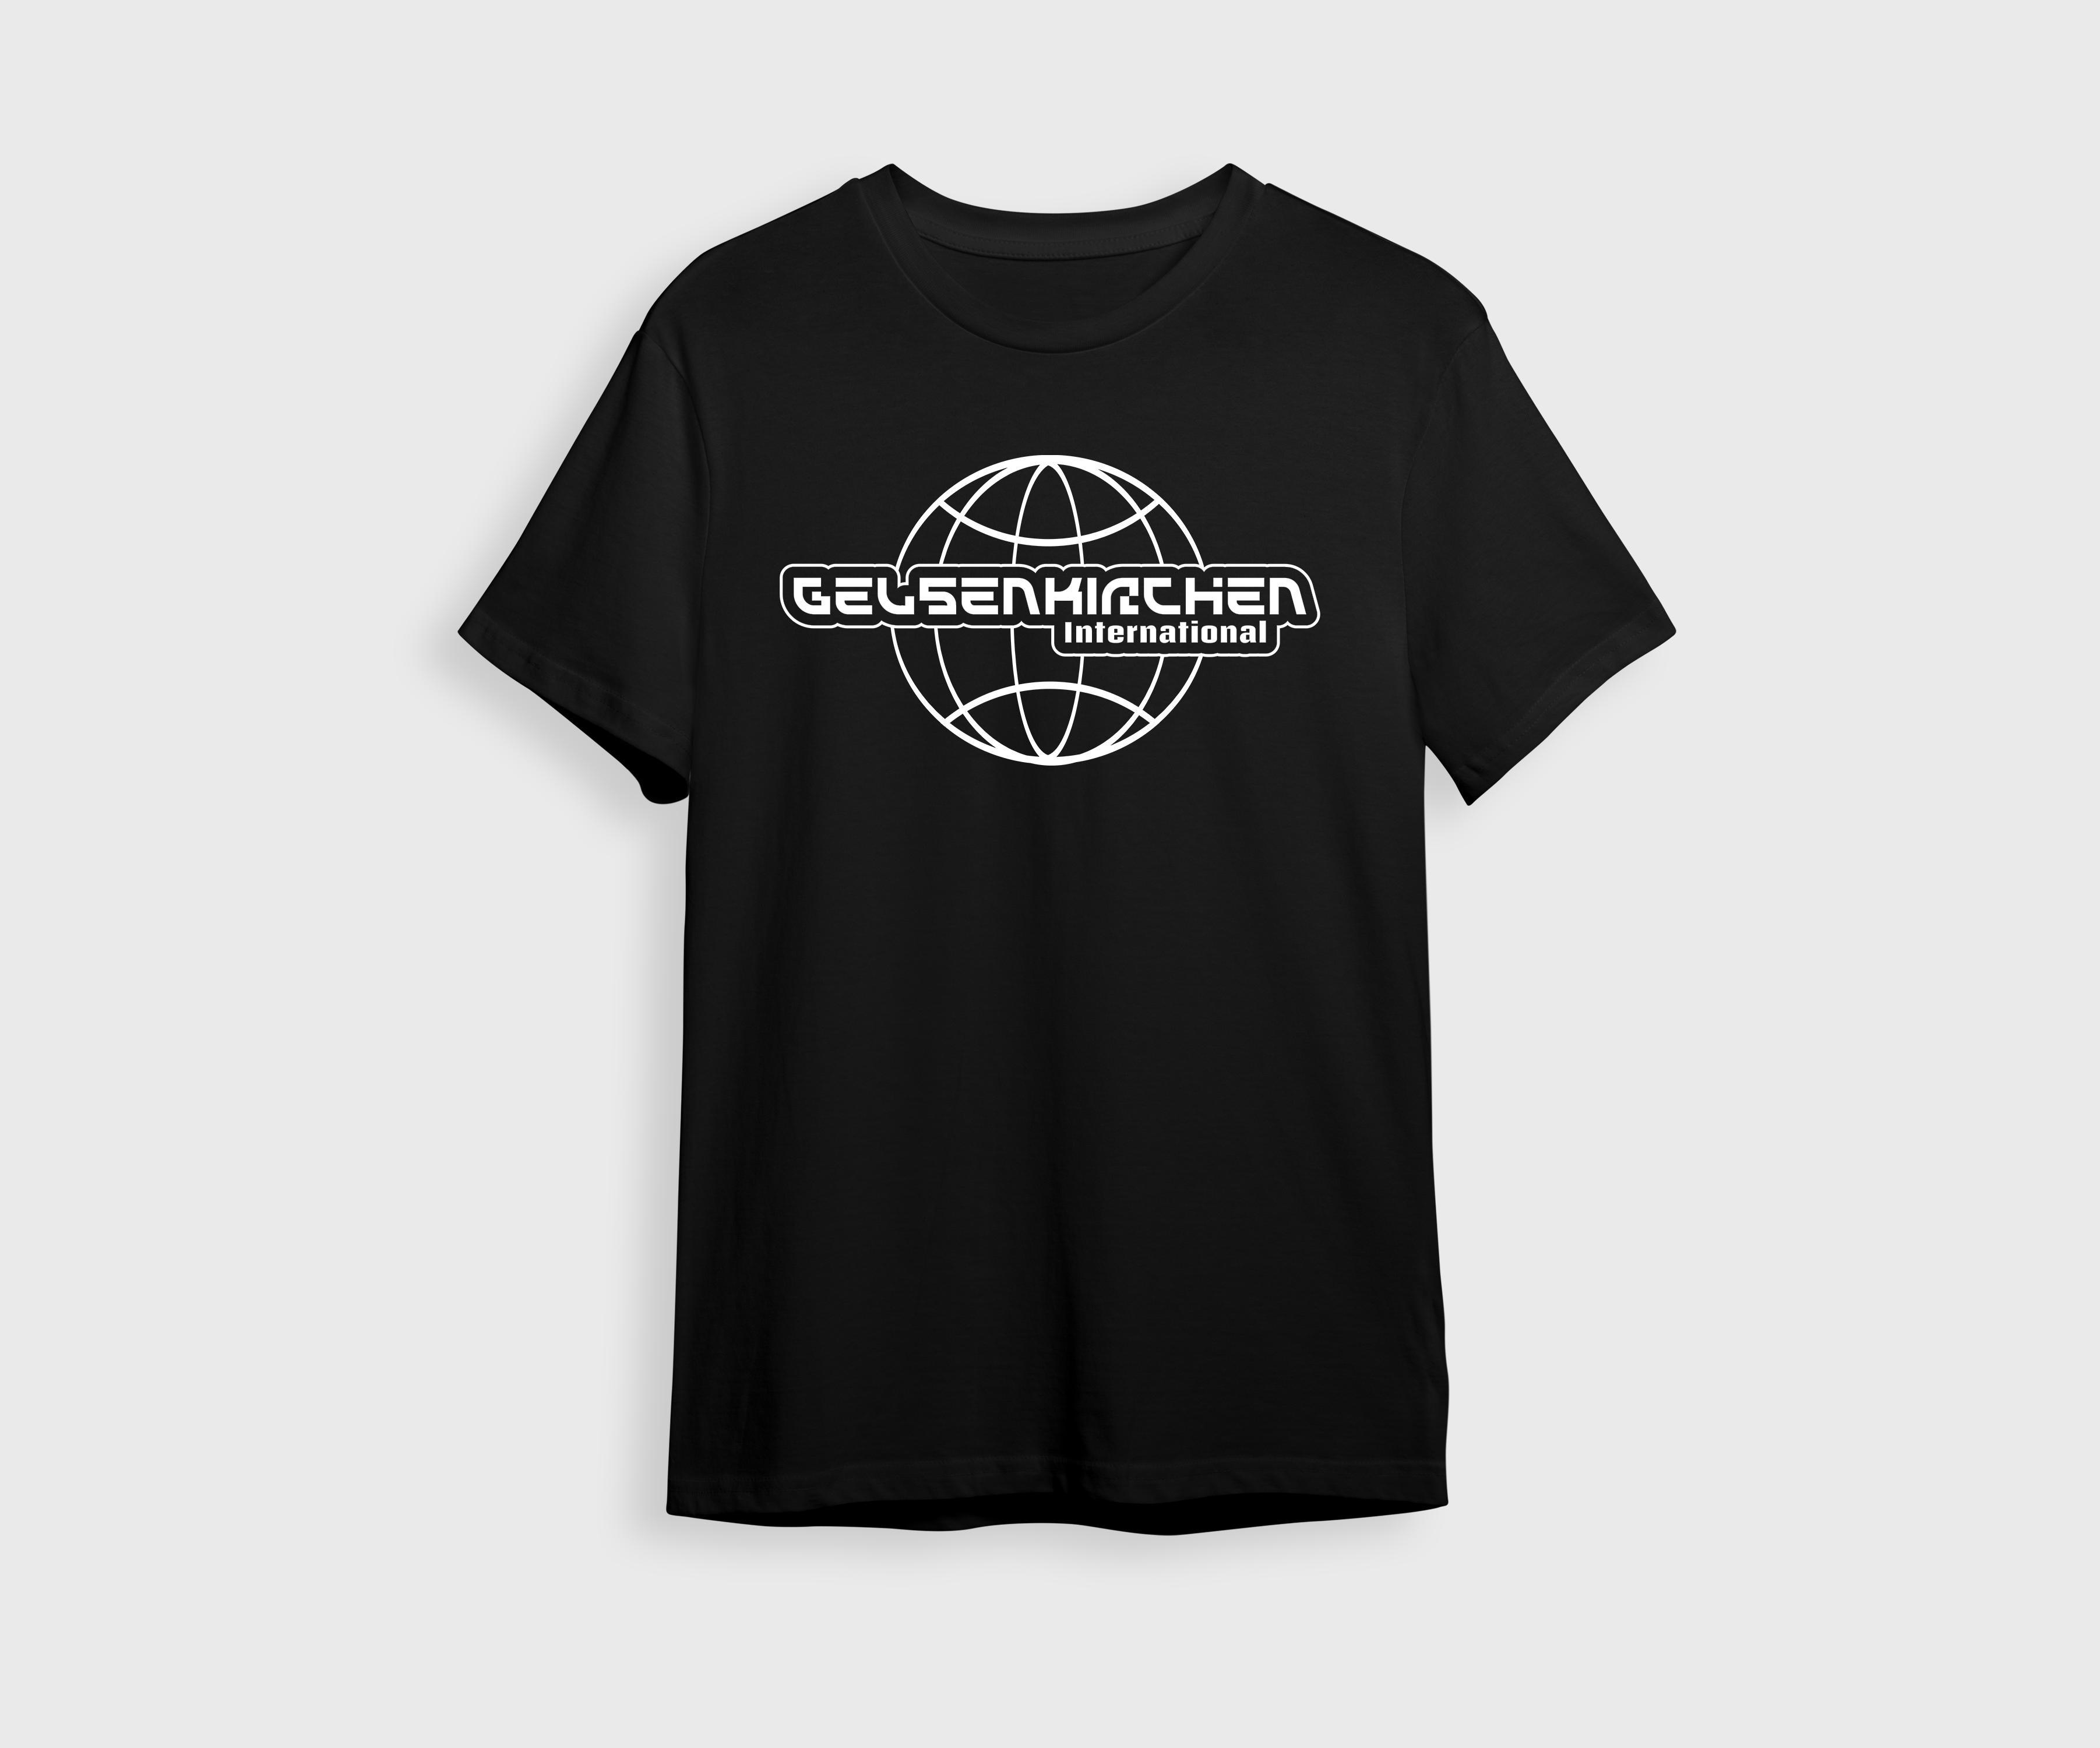 Gelsenkirchen International T-Shirt